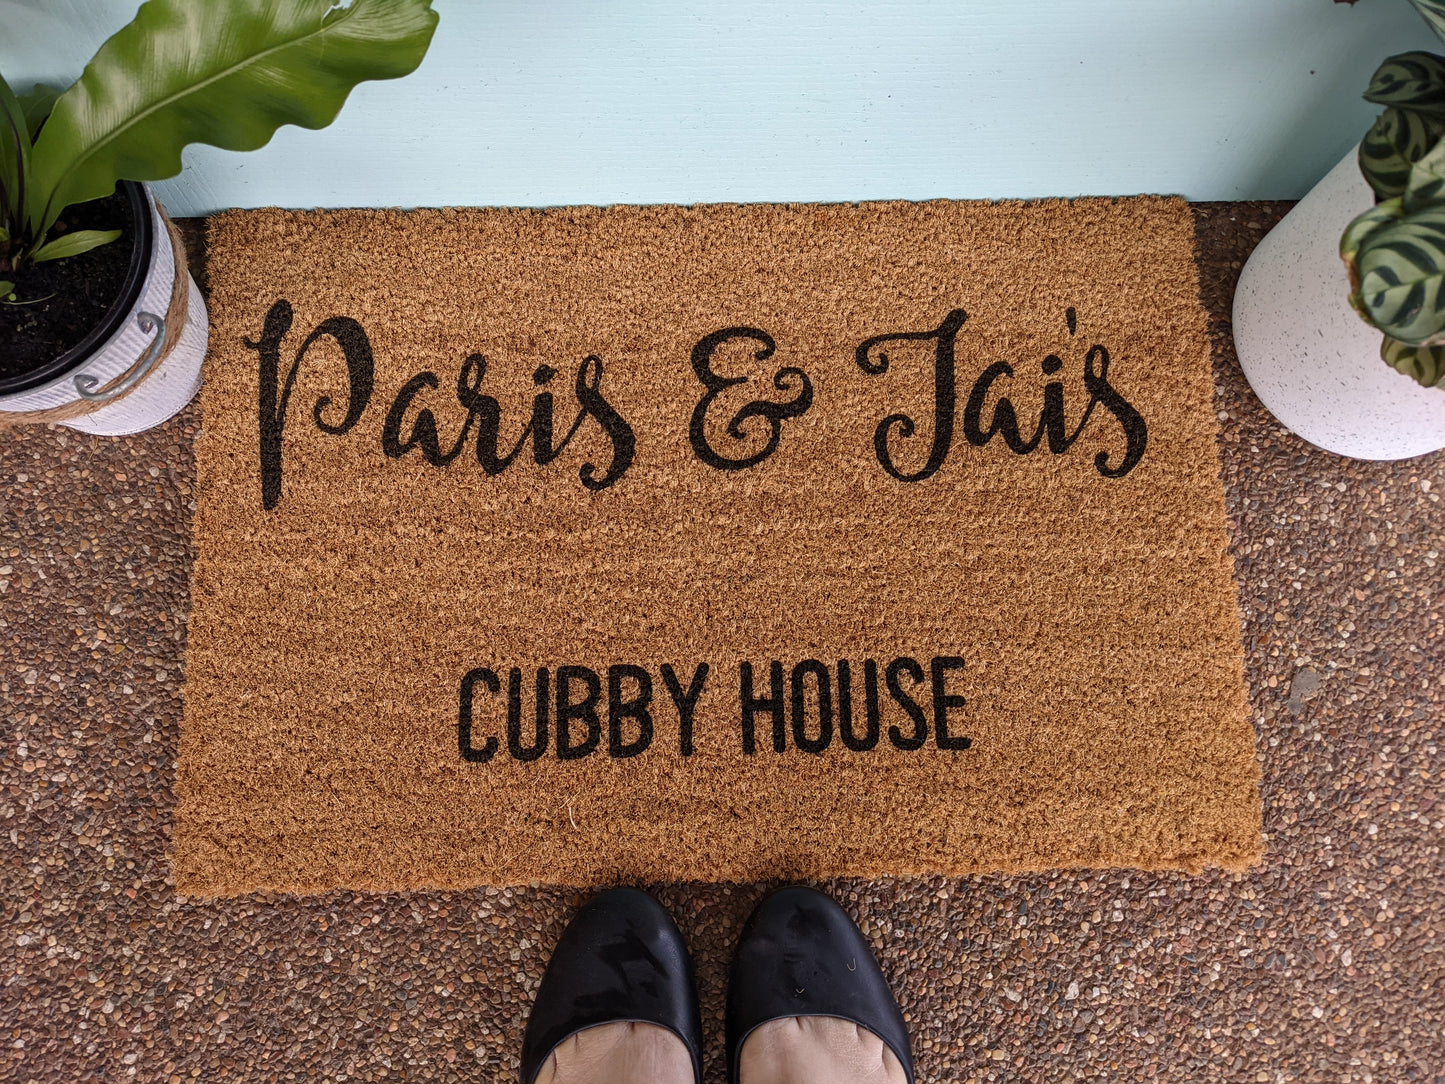 Cubby house kids personalised Doormat - Personalised Doormat Australia